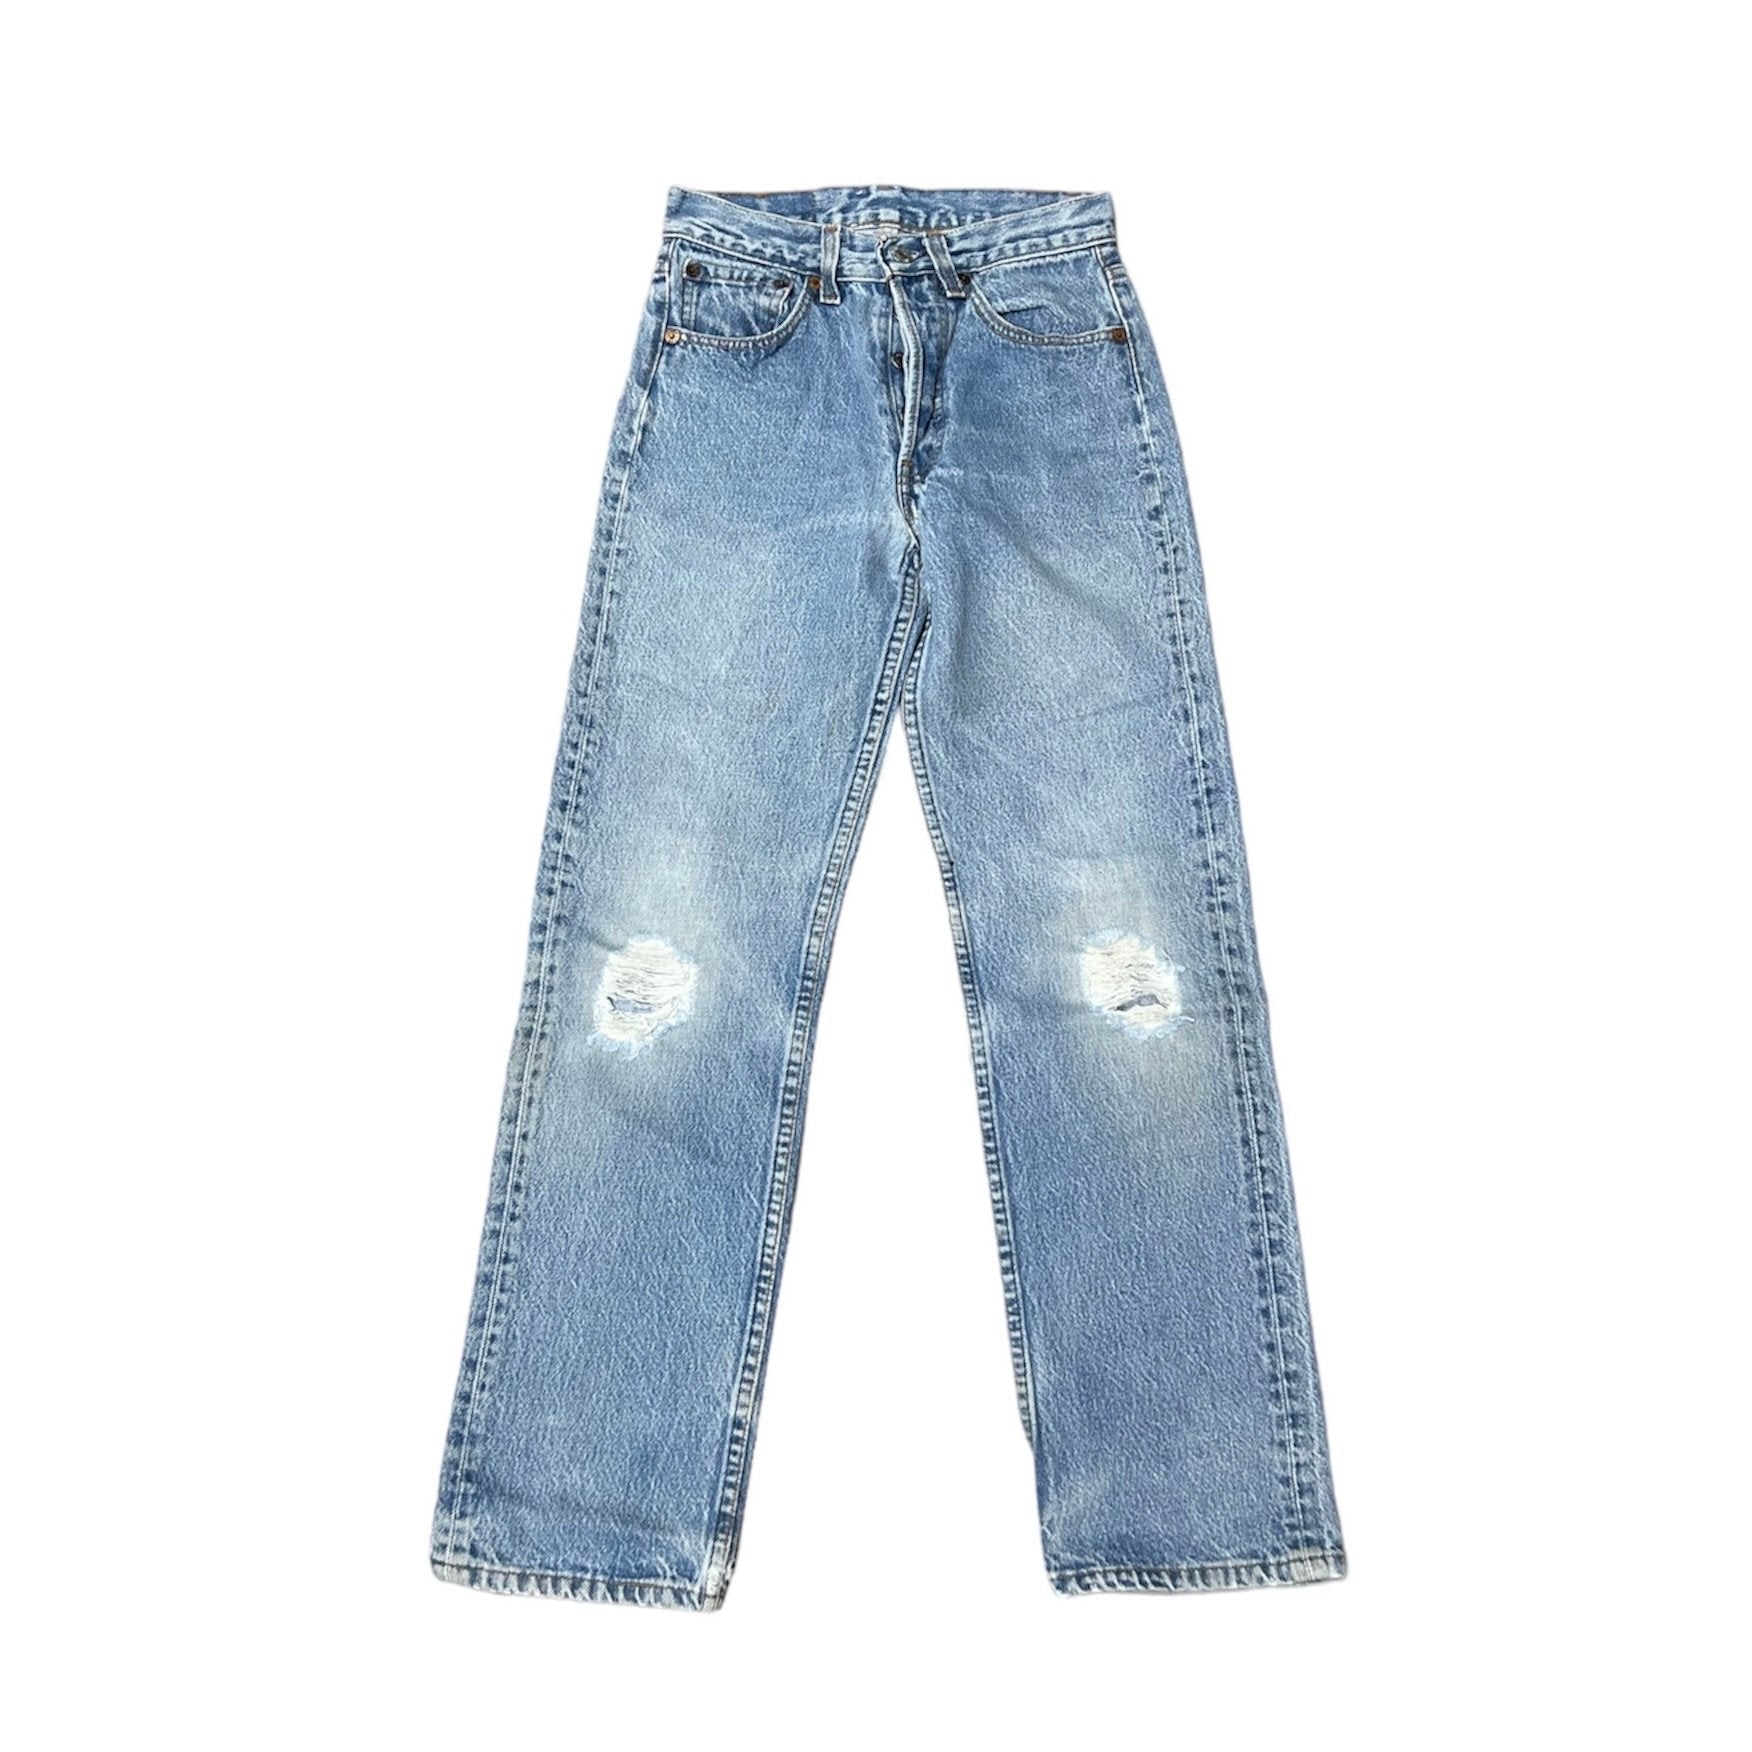 Vintage Levis 501 Blue Jeans (W27/L32)